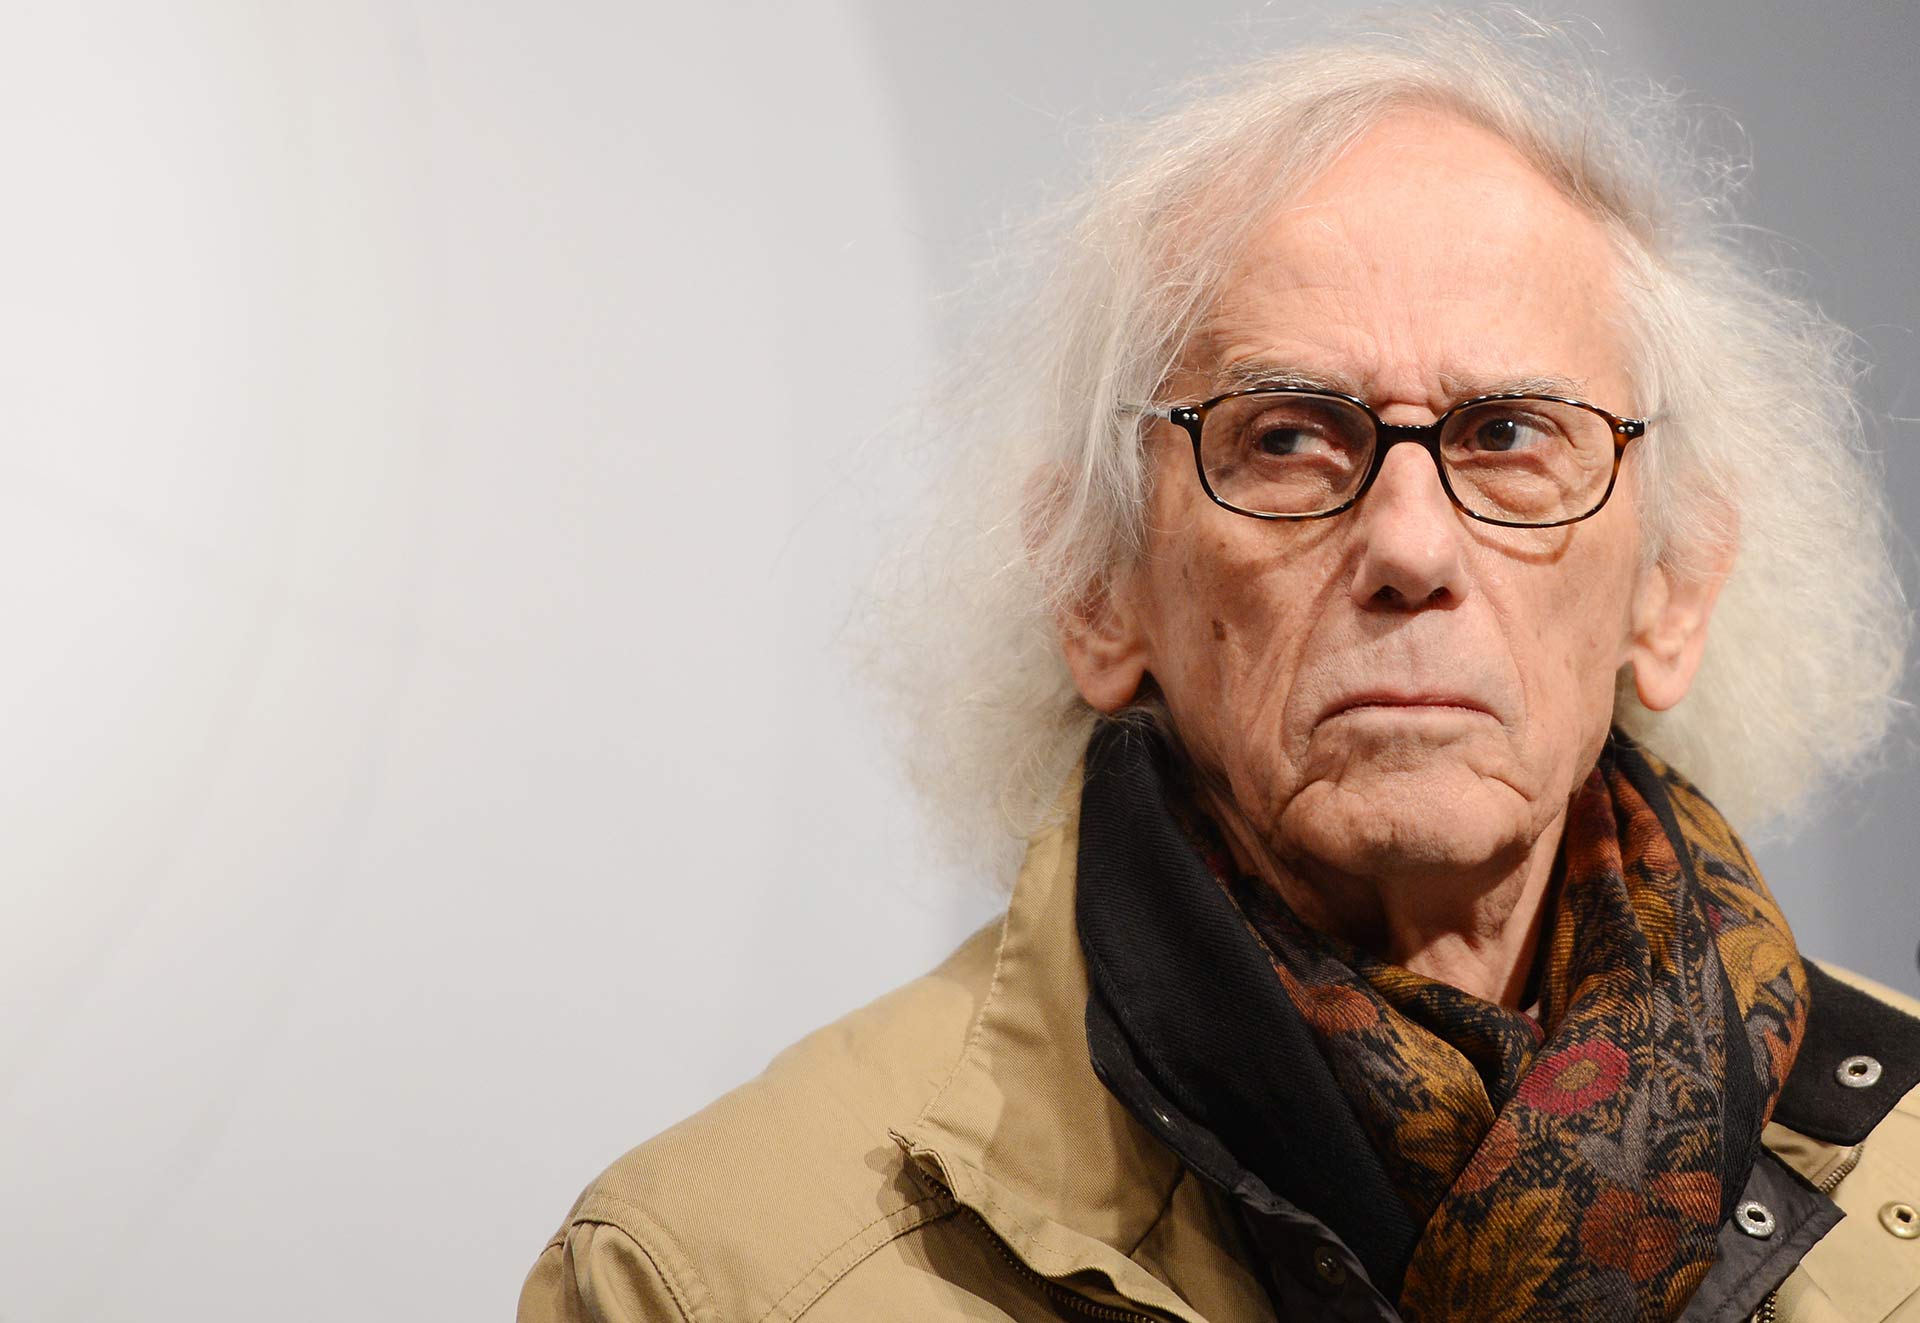 Muere a los 84 años el artista plástico Christo, maestro del embalaje